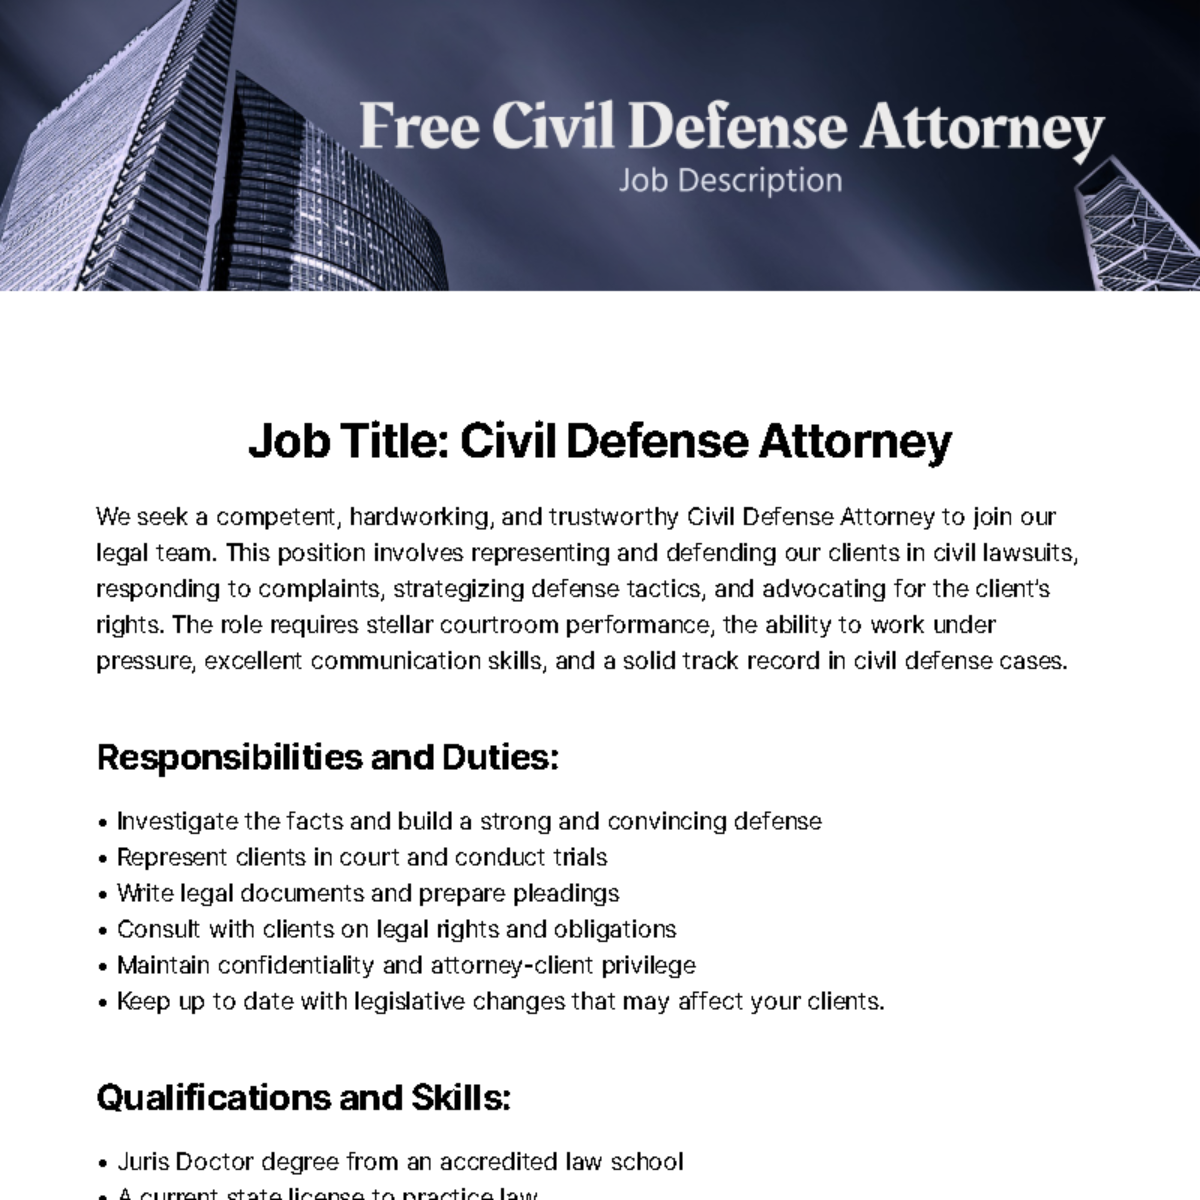 Civil Defense Attorney Job Description Template